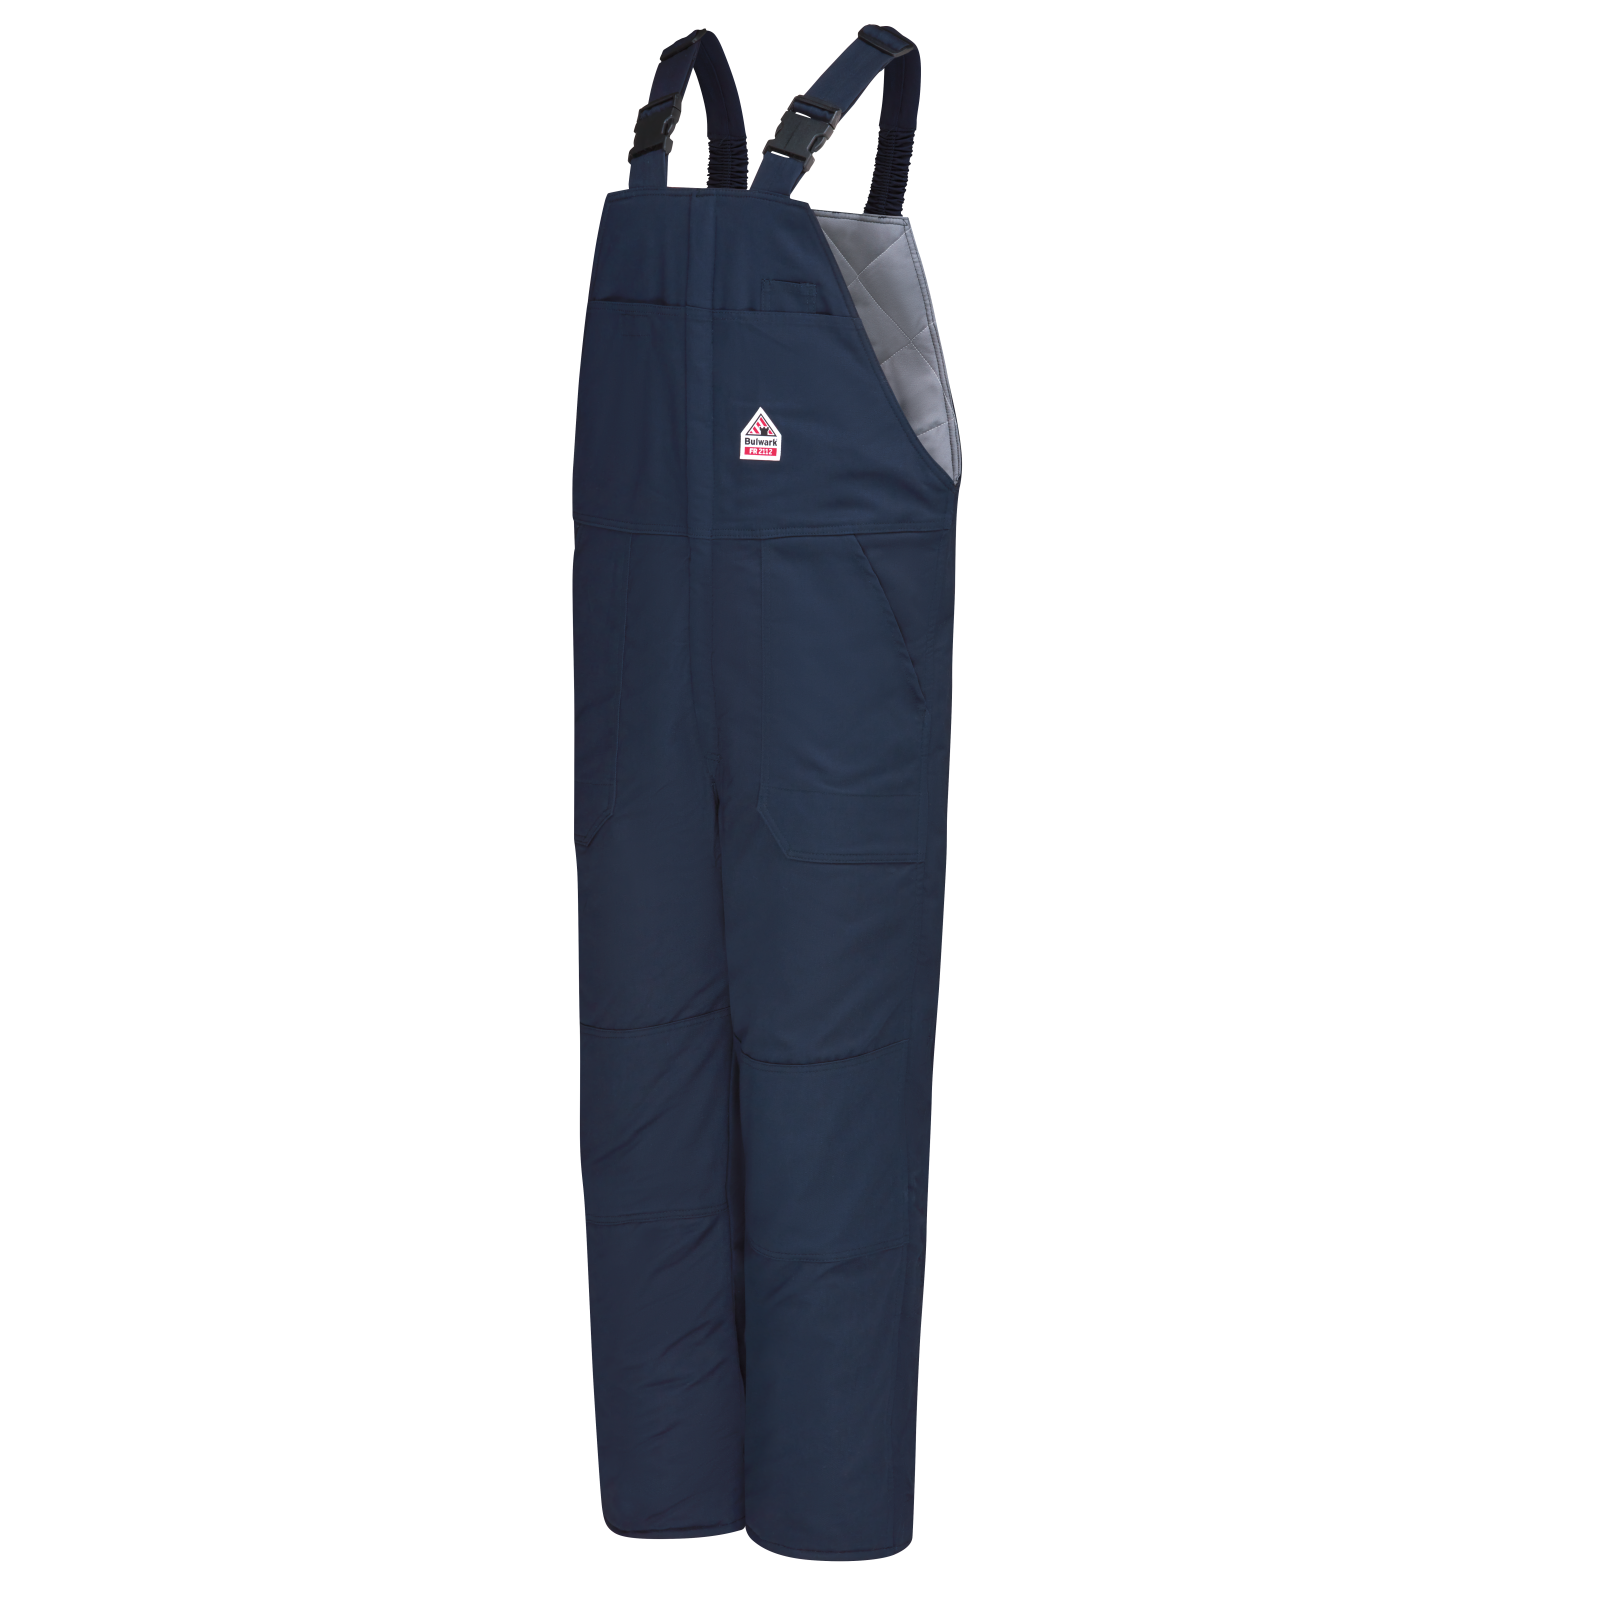 Short Sleeve Heritage Jumpsuit - Medium Wash